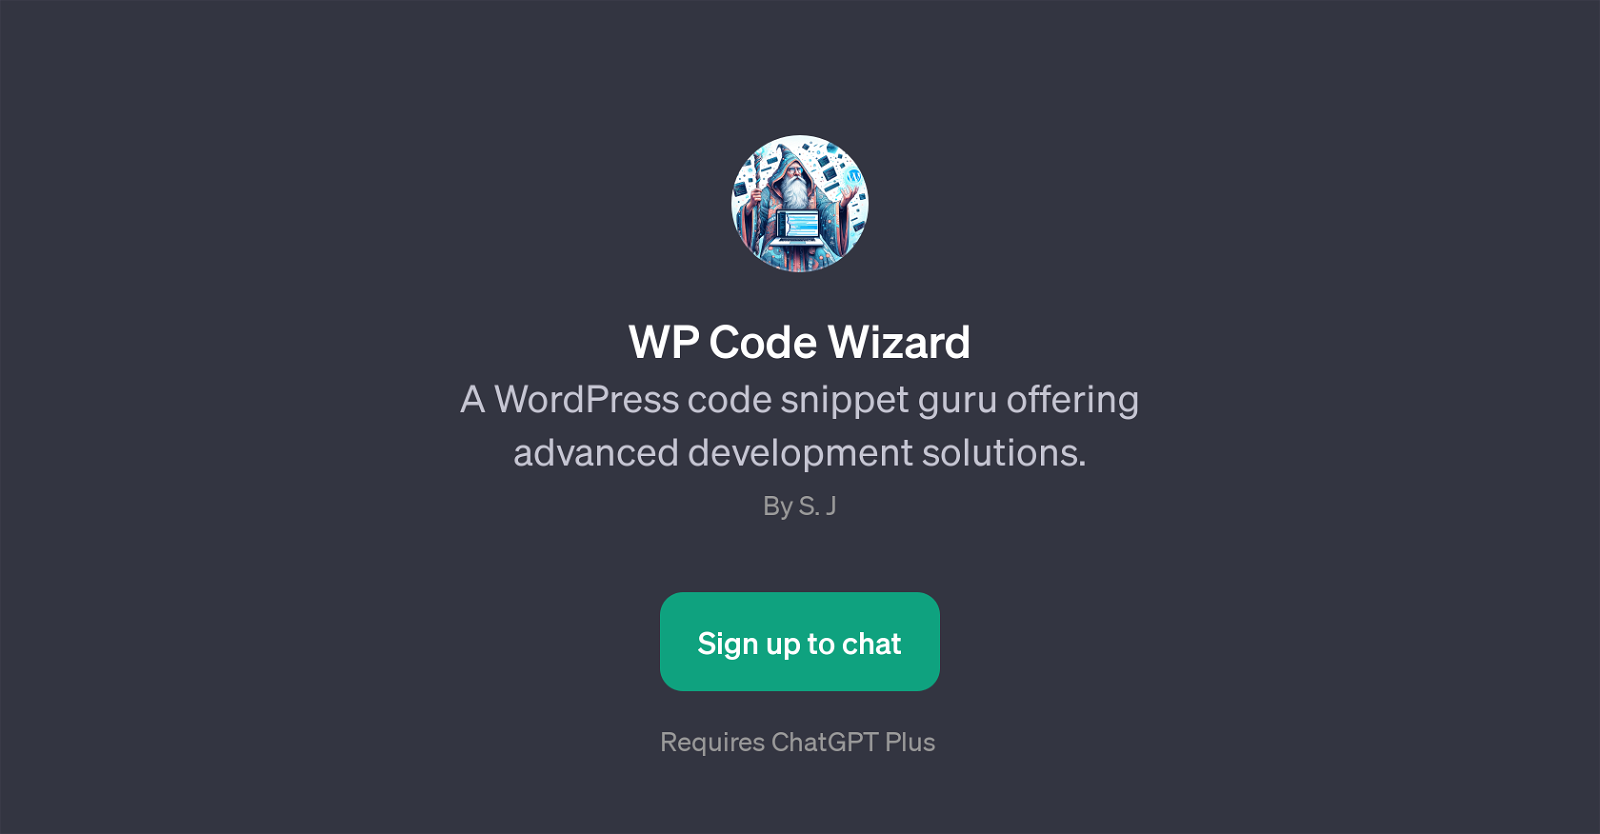 WP Code Wizard website